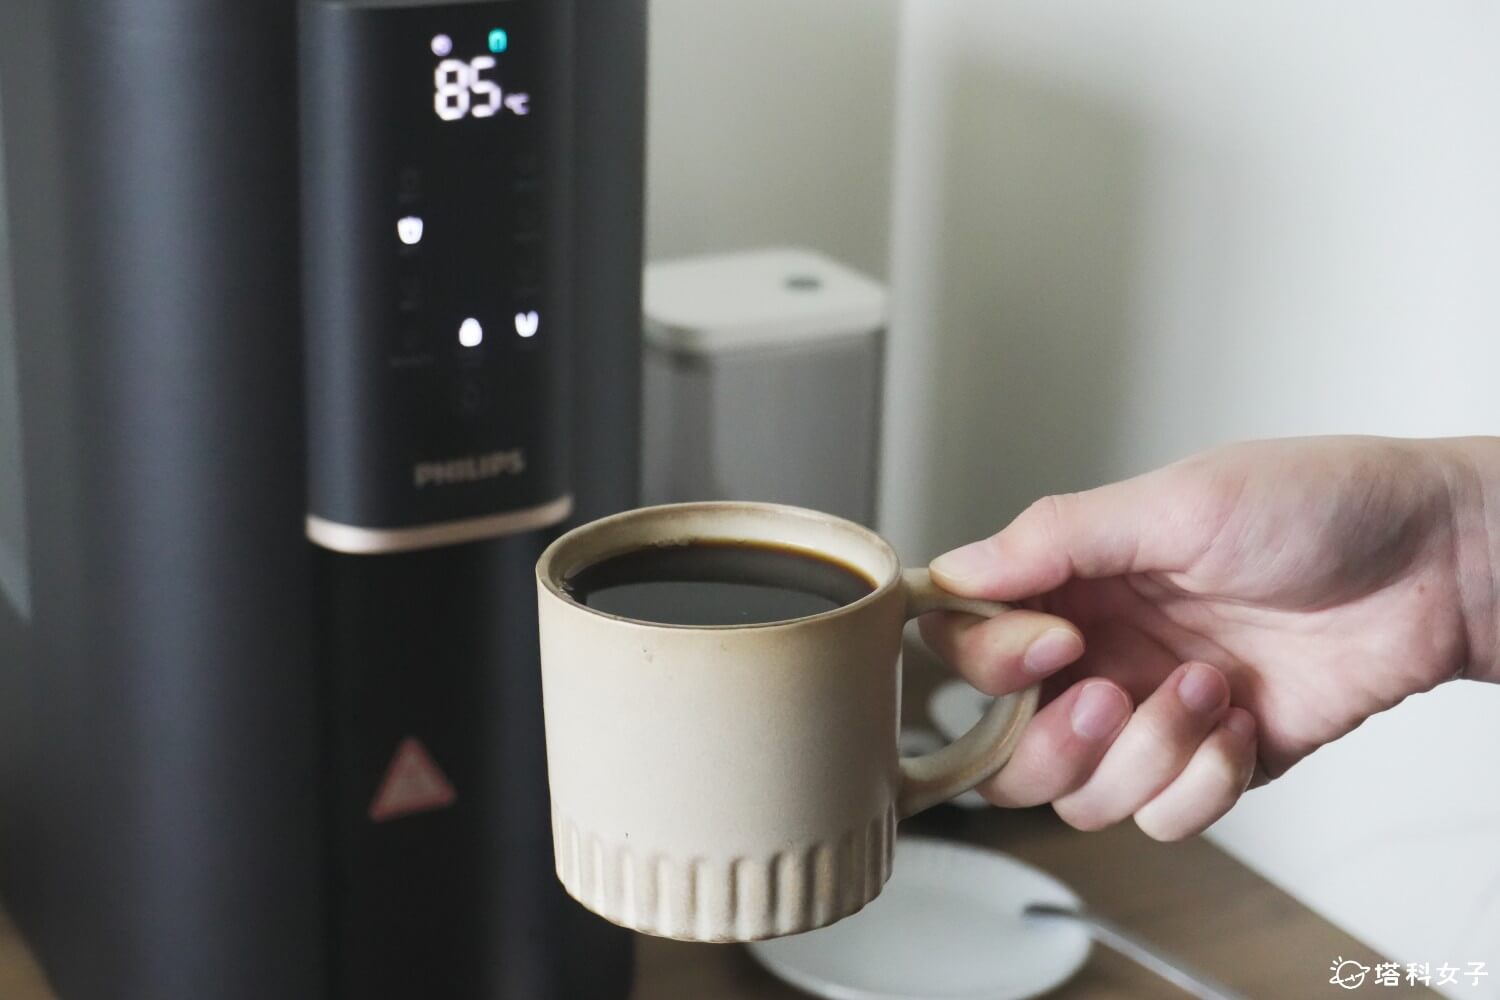 飛利浦瞬熱式RO淨飲機開箱：85 度泡咖啡